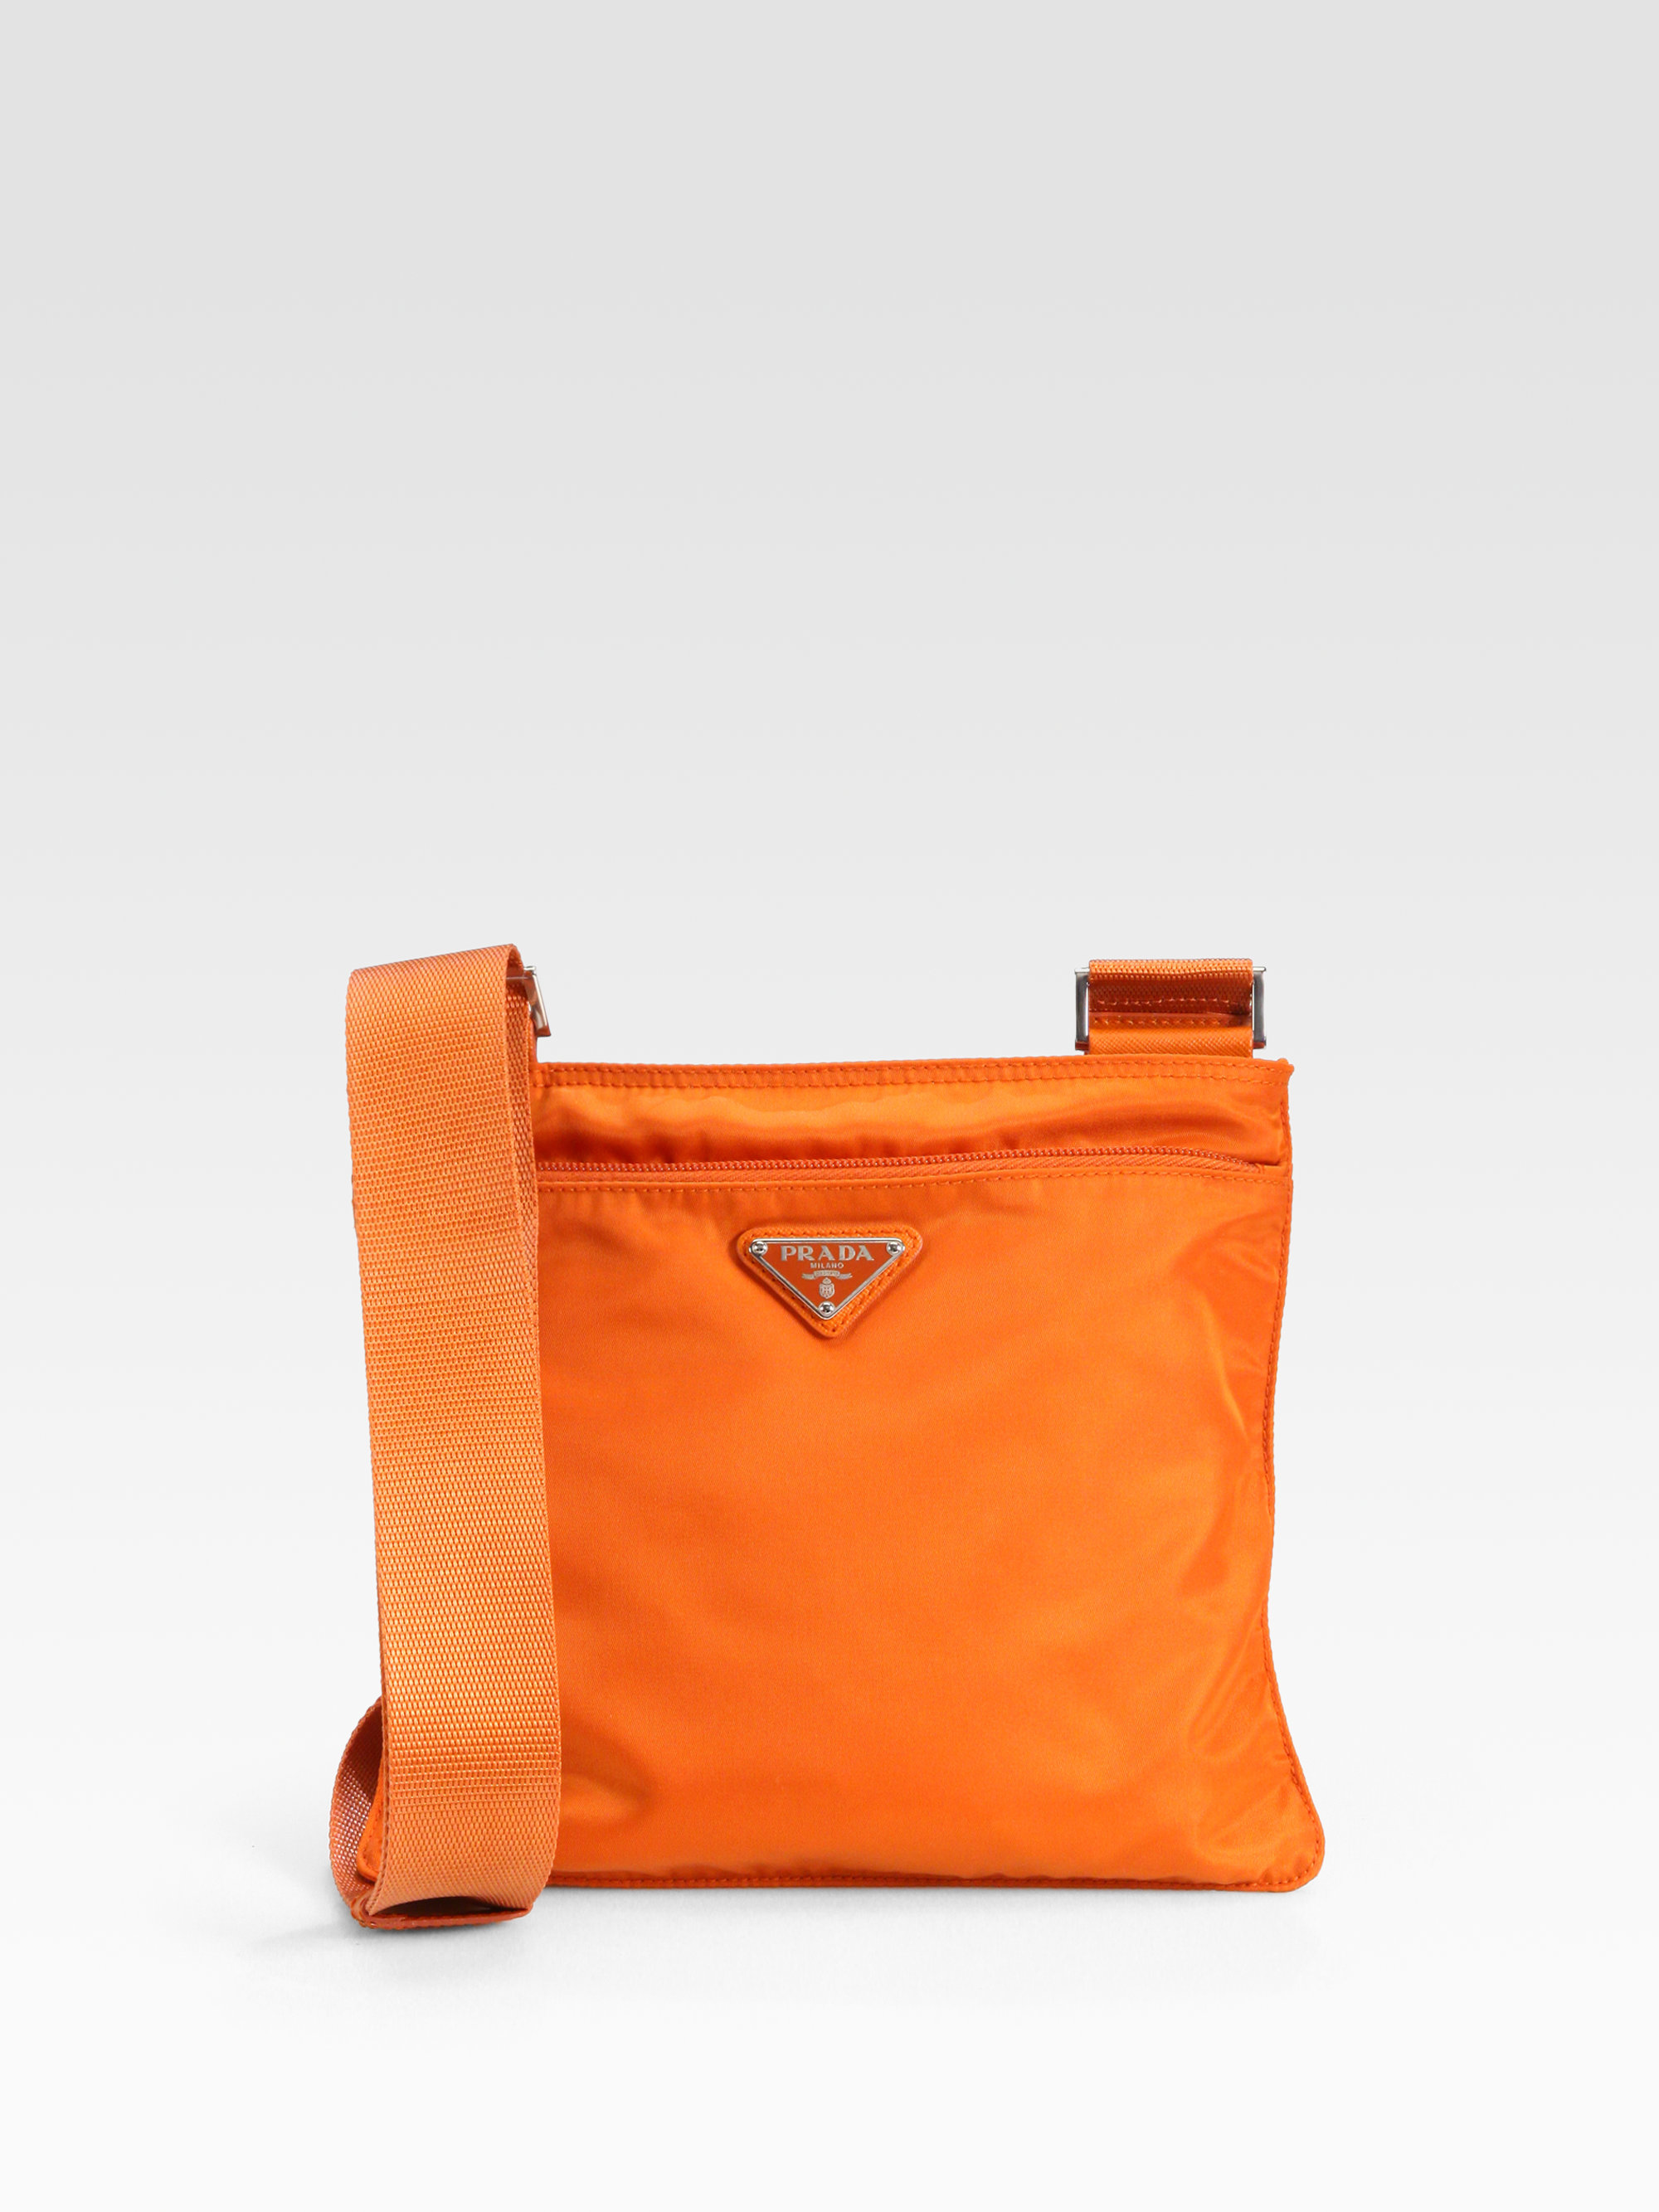 Prada Nylon Messenger Bag in Papaya-Orange (Orange) | Lyst